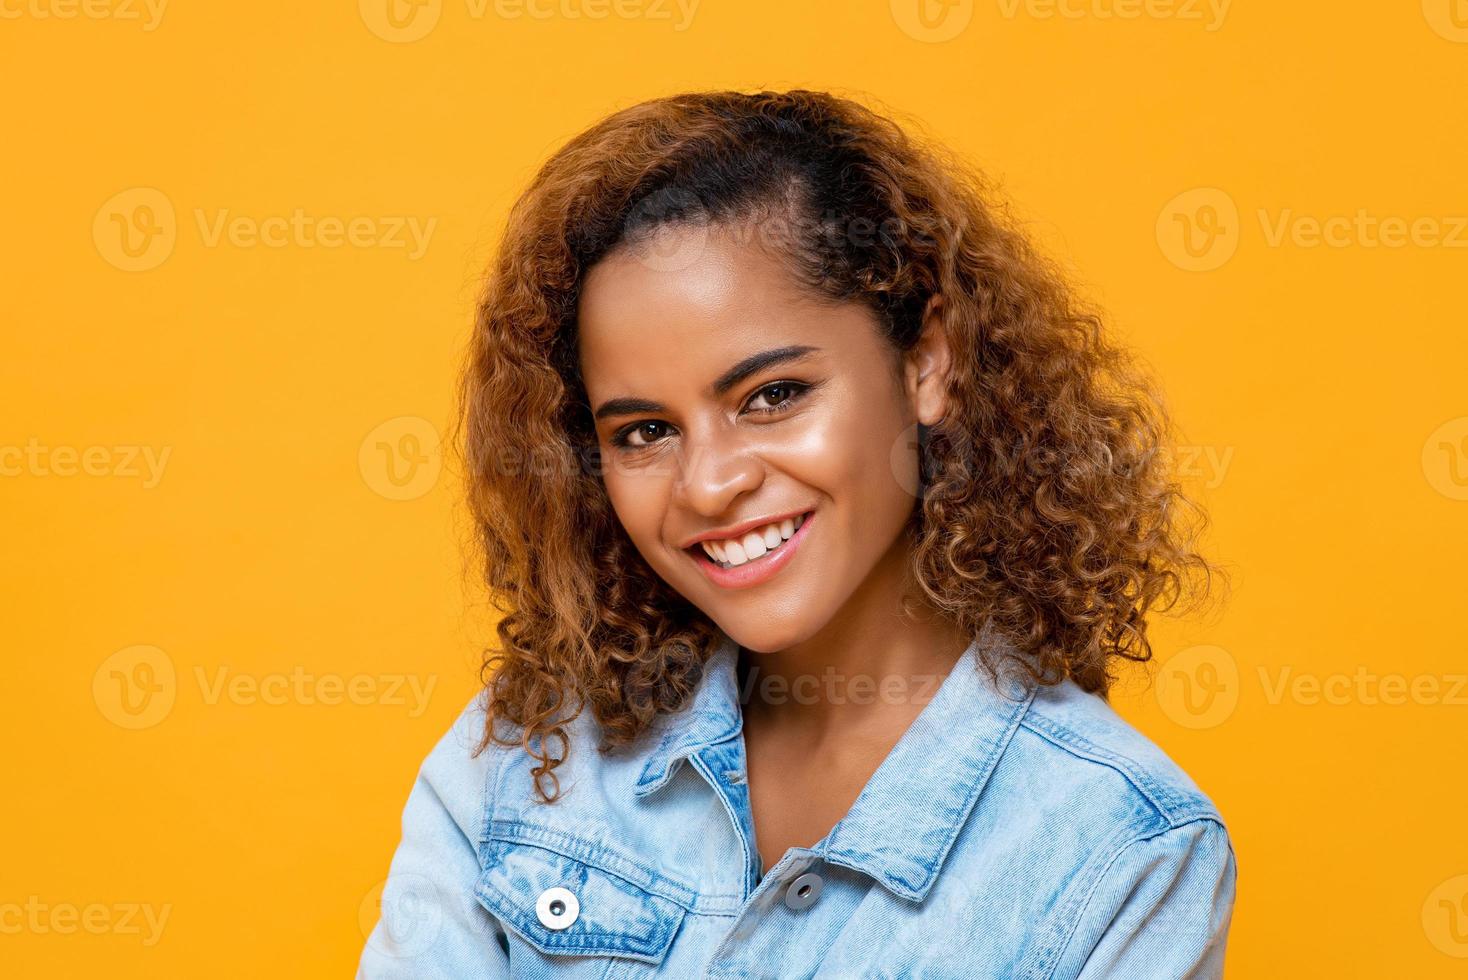 close-up portret van gelukkige jonge mooie Afro-Amerikaanse vrouw die lacht terwijl ze naar de camera kijkt in een geïsoleerde studio gele achtergrond foto